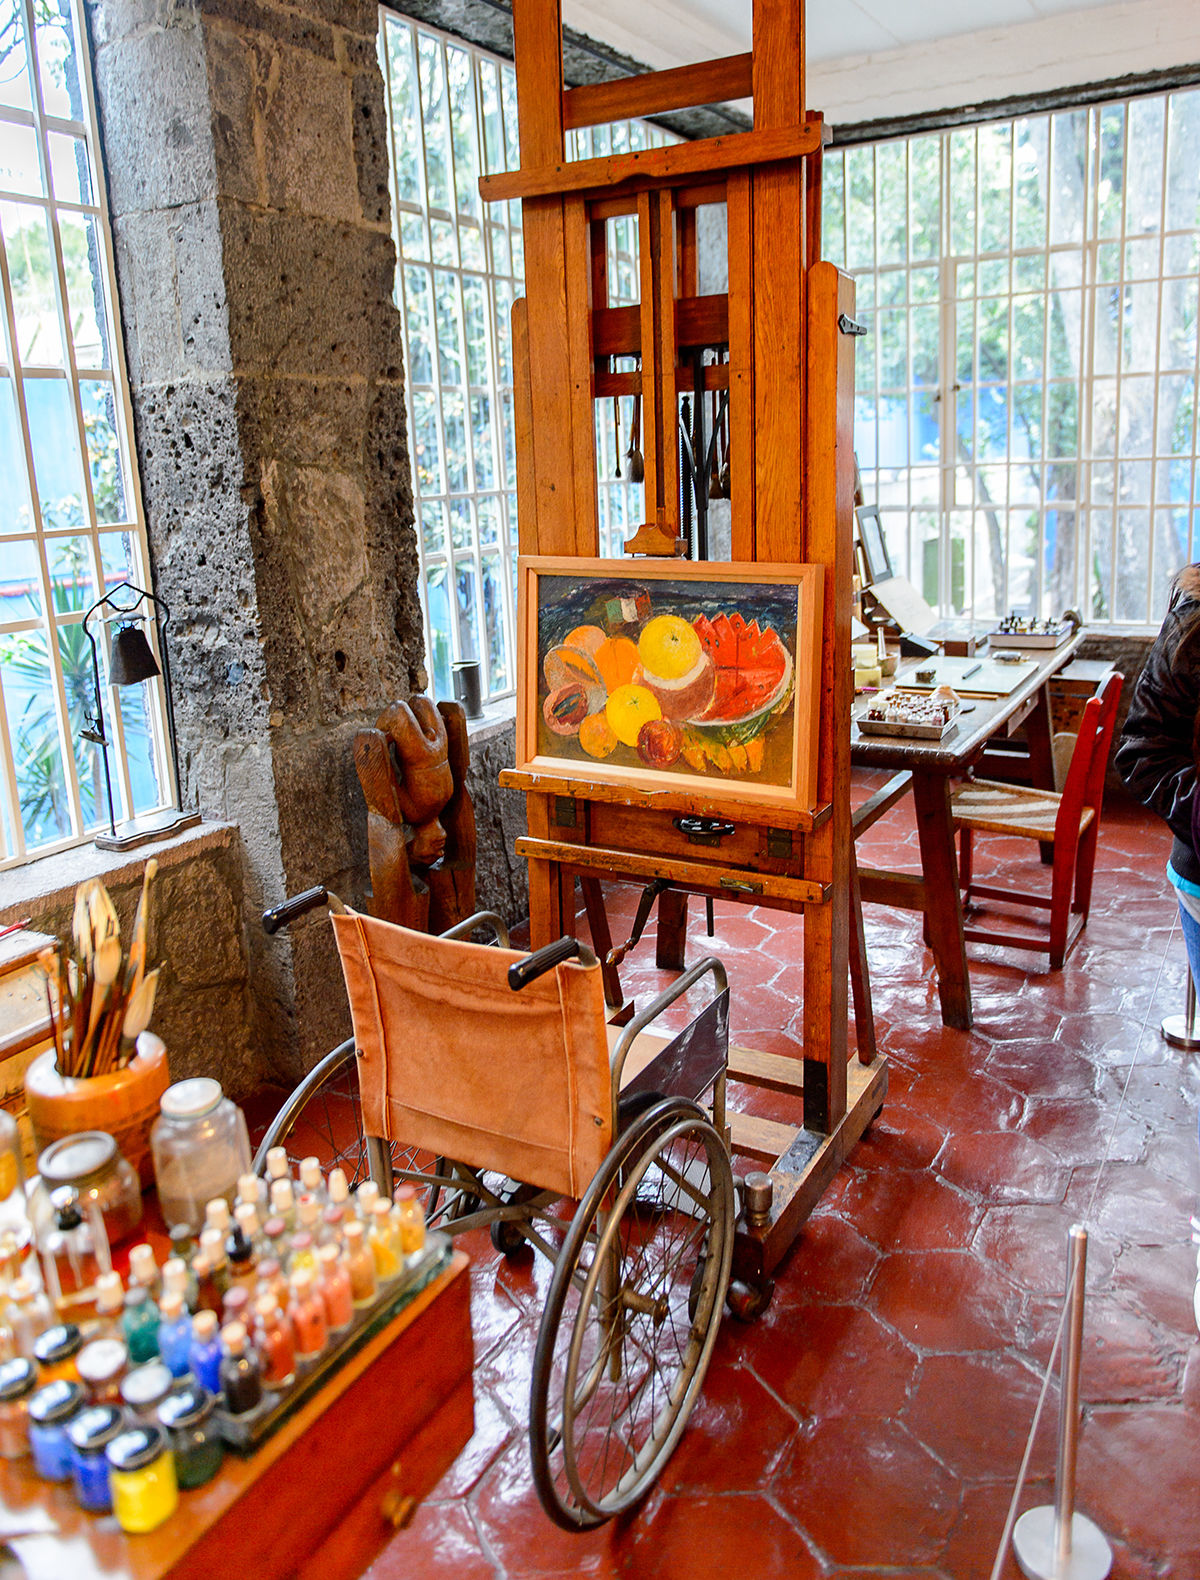 Guide to Mexico — Mexico City Frida Kahlo Museum